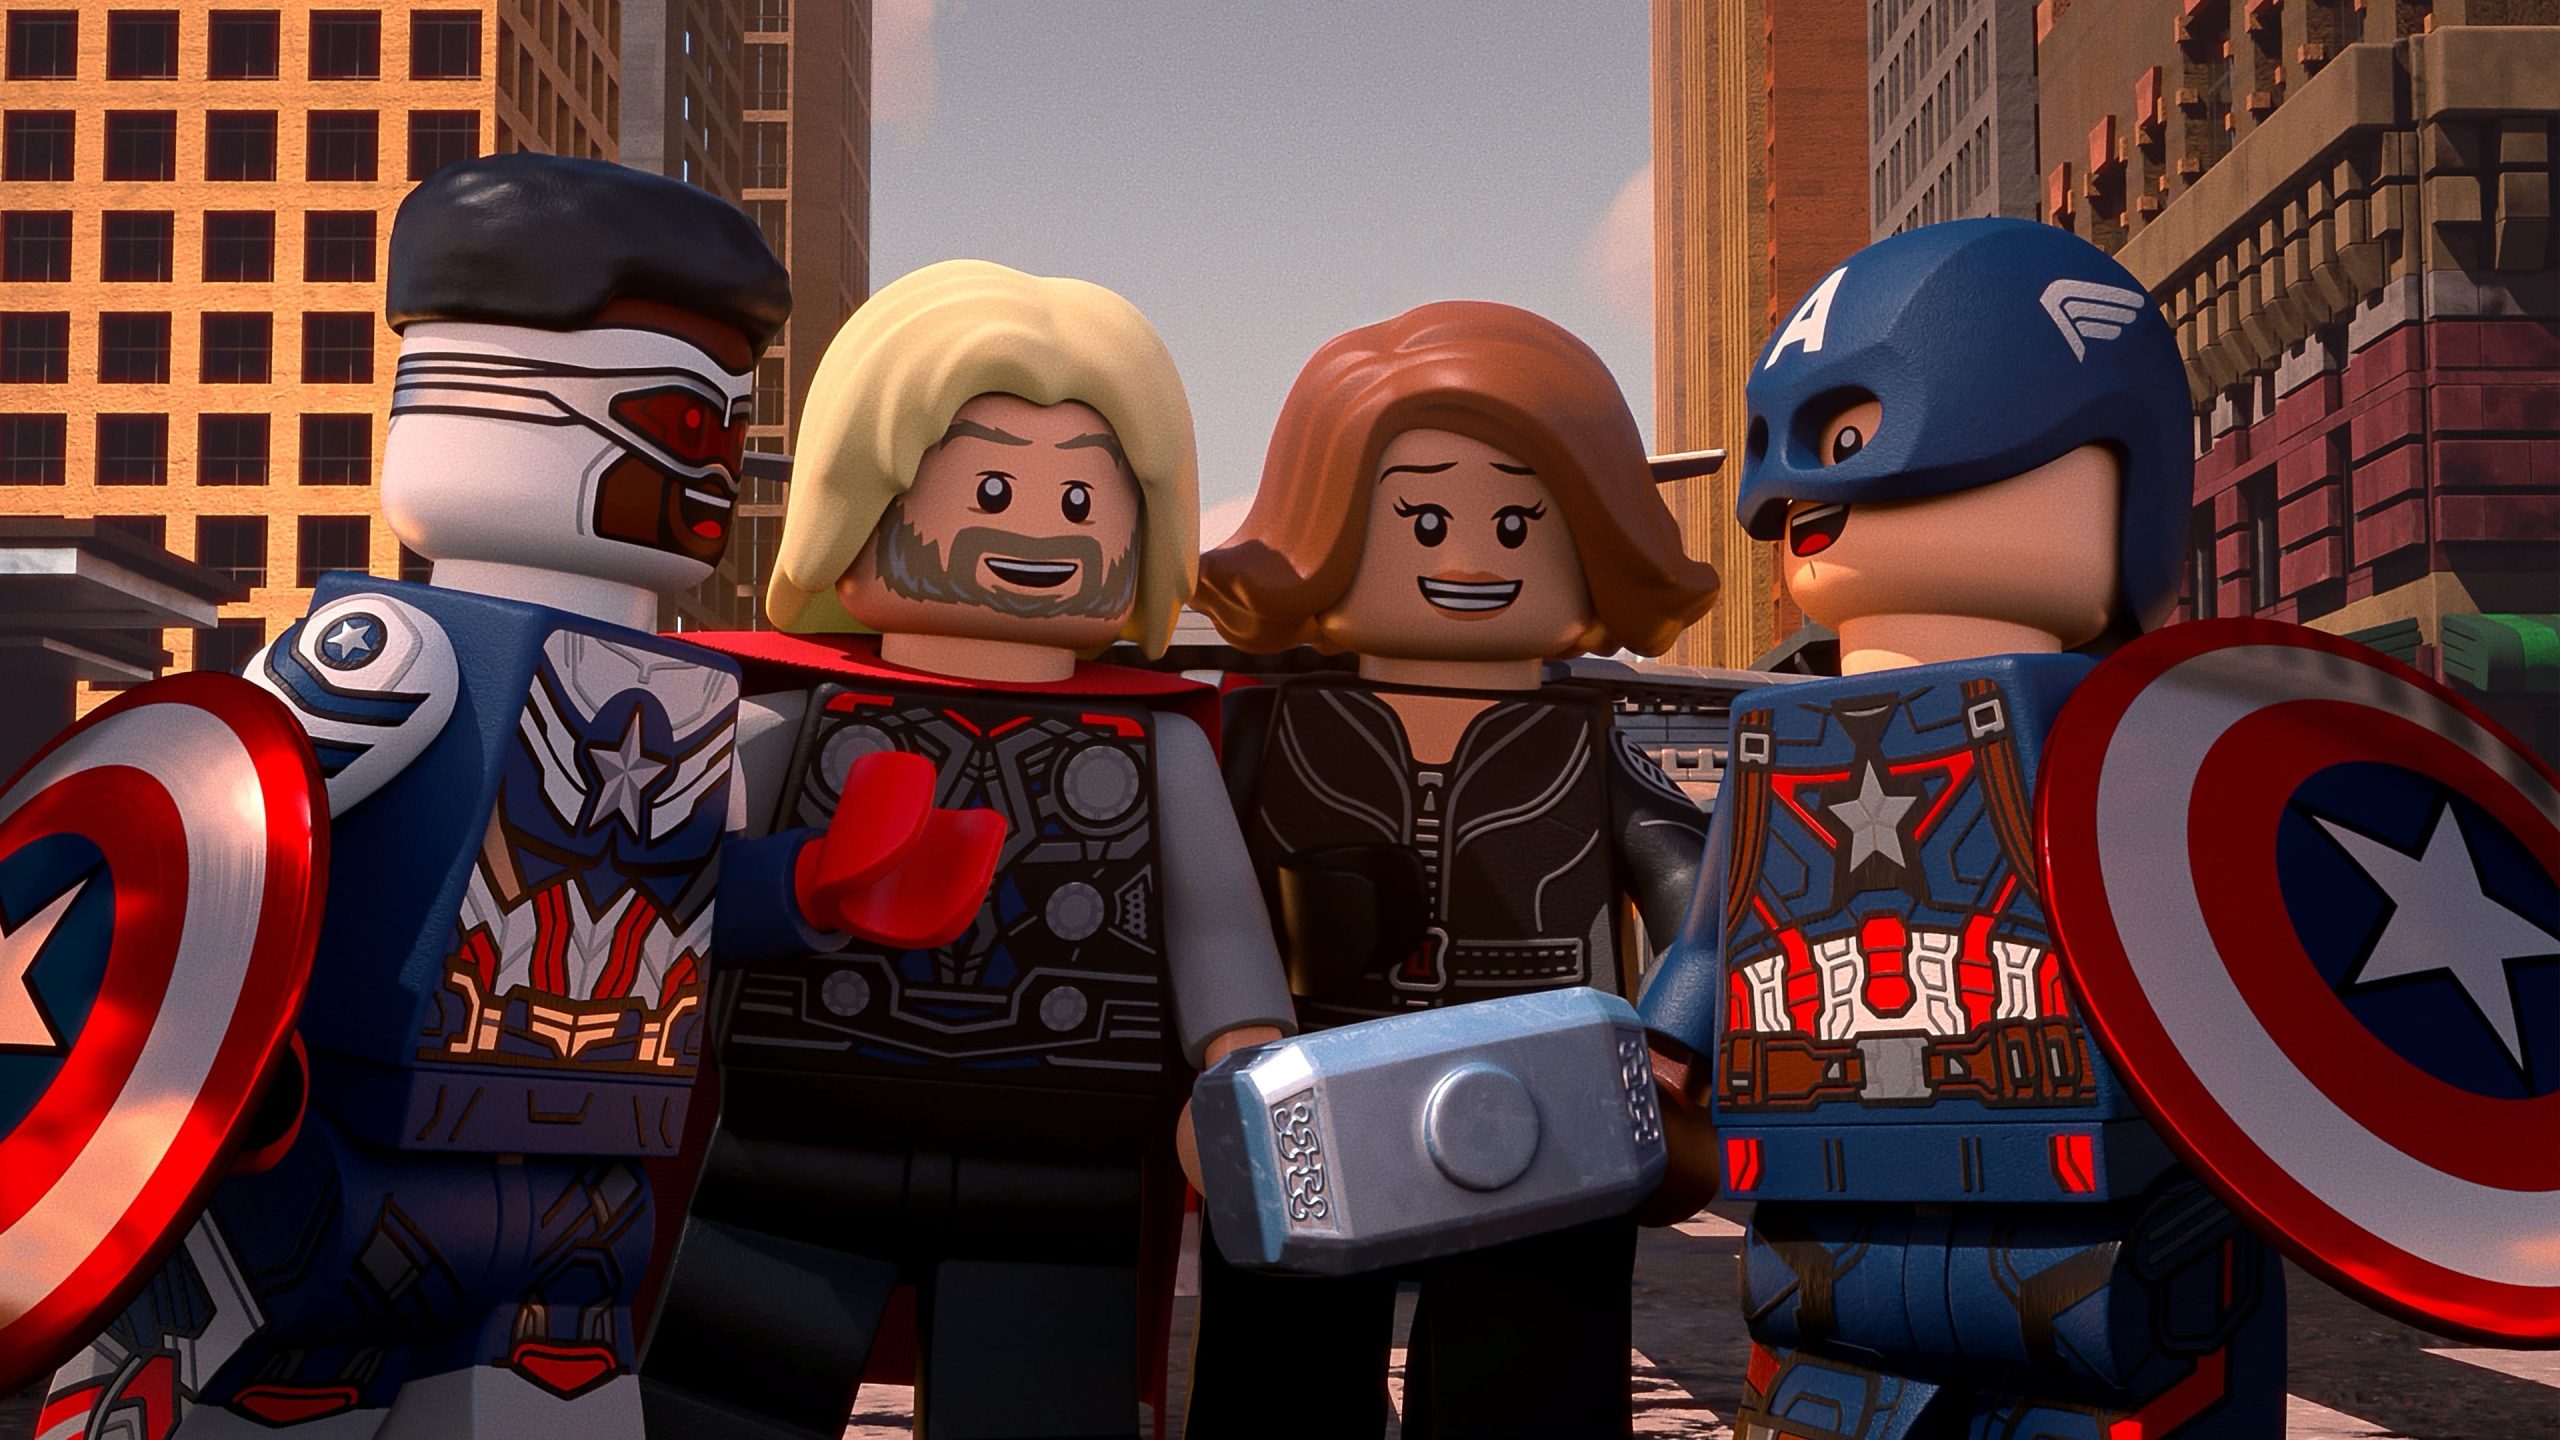 دانلود فیلم Lego Marvel Avengers Code Red